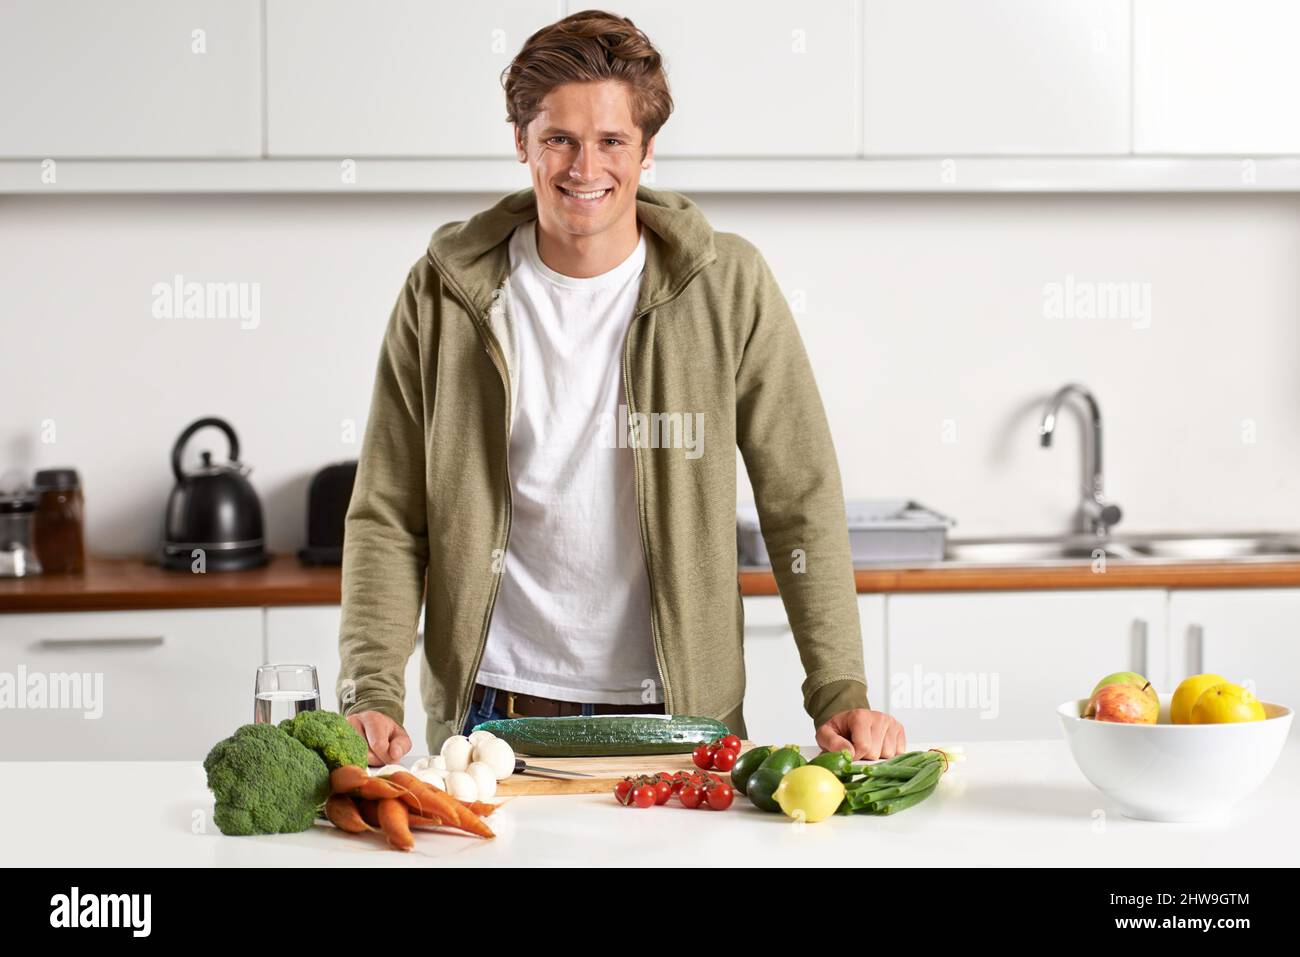 Kochen auf gesunde Art und Weise. Porträt eines jungen Mannes, der das Abendessen vorbereitet. Stockfoto